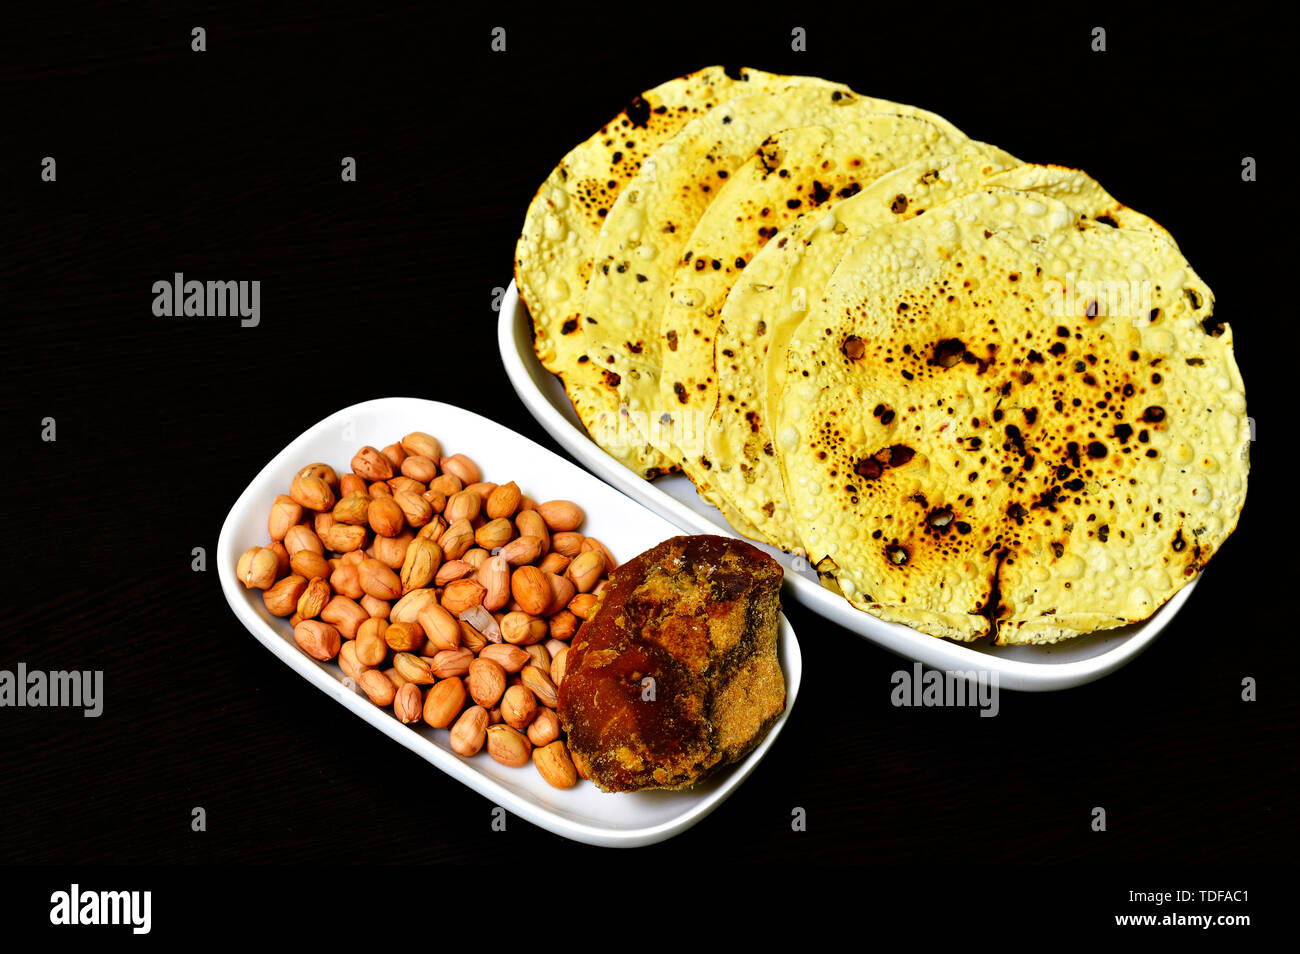 Un snack-indienne papad rôti entier avec des arachides et jagré dans une assiette. Banque D'Images